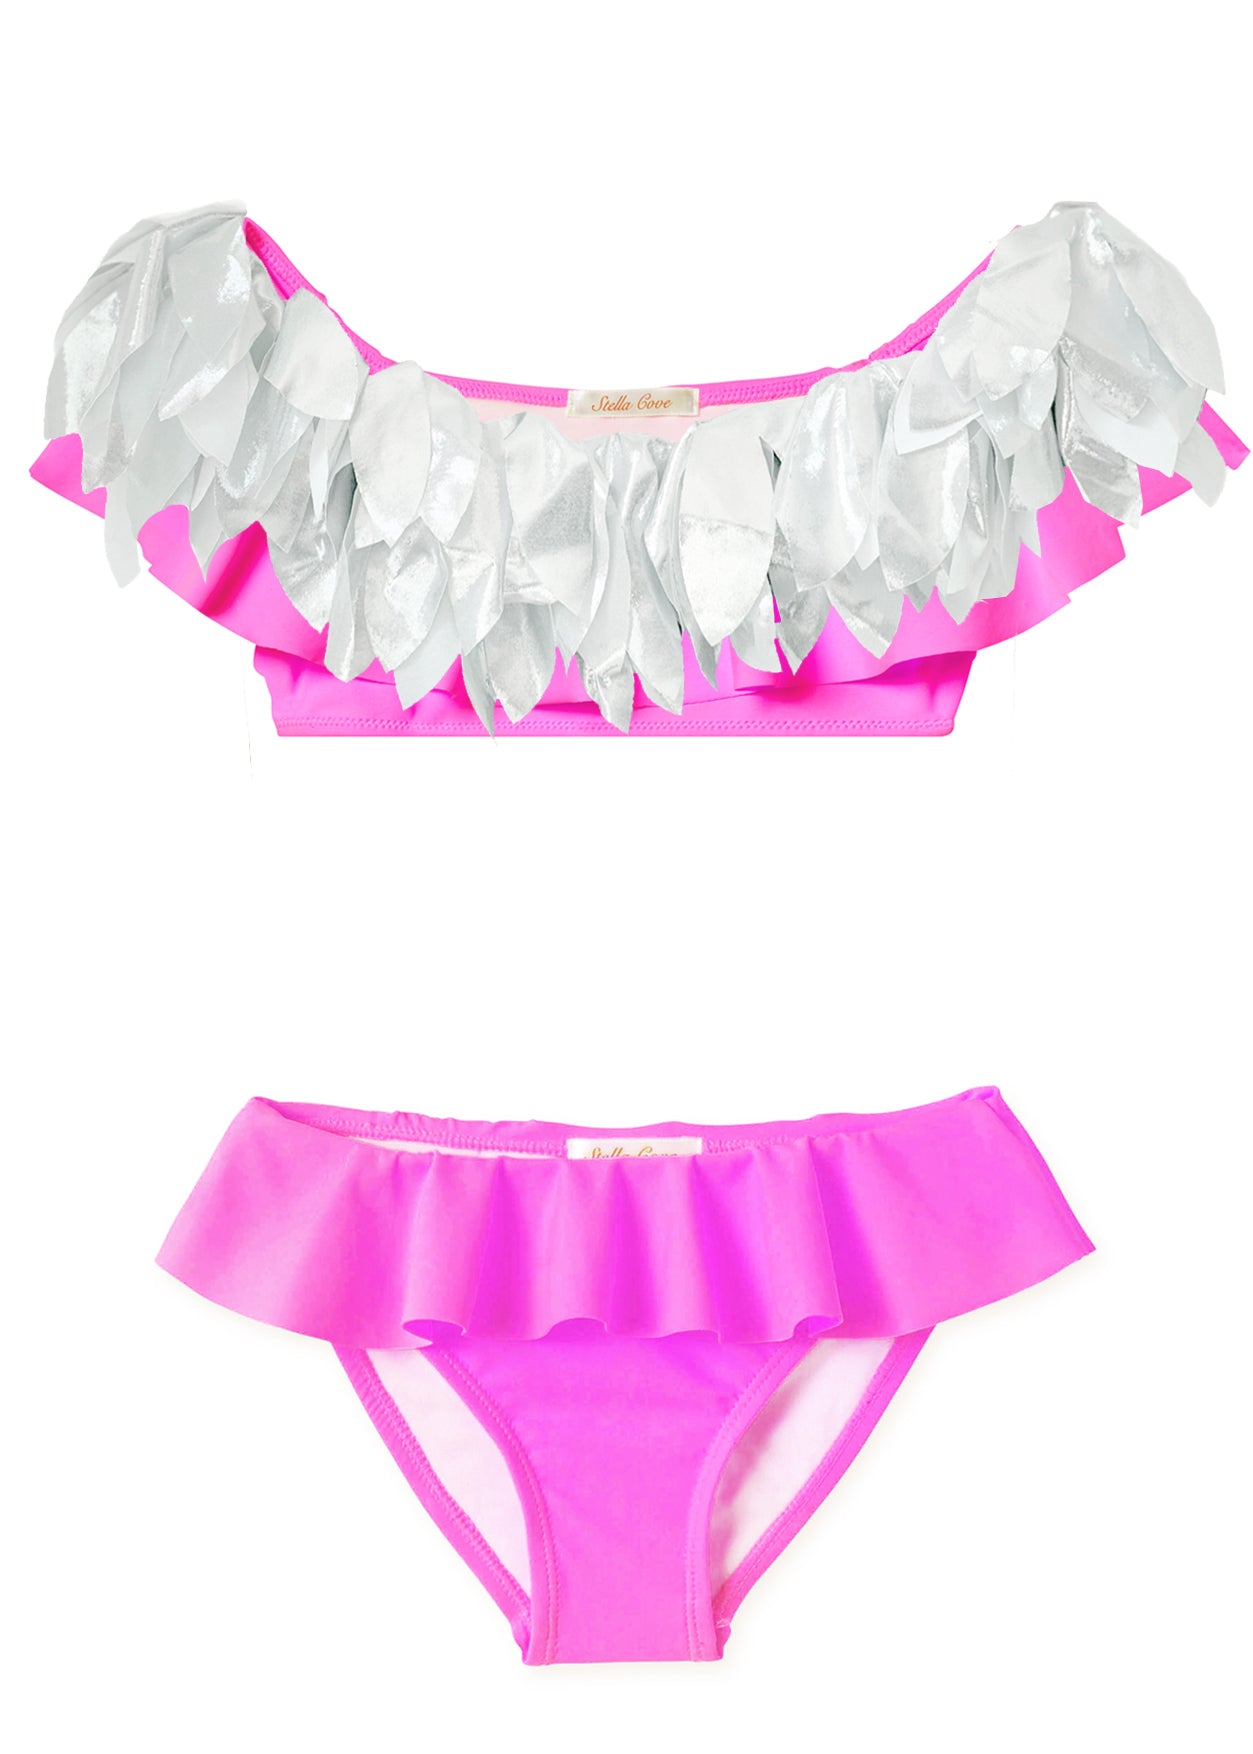 Neon Pink Ruffle Bikini with Silver Petals